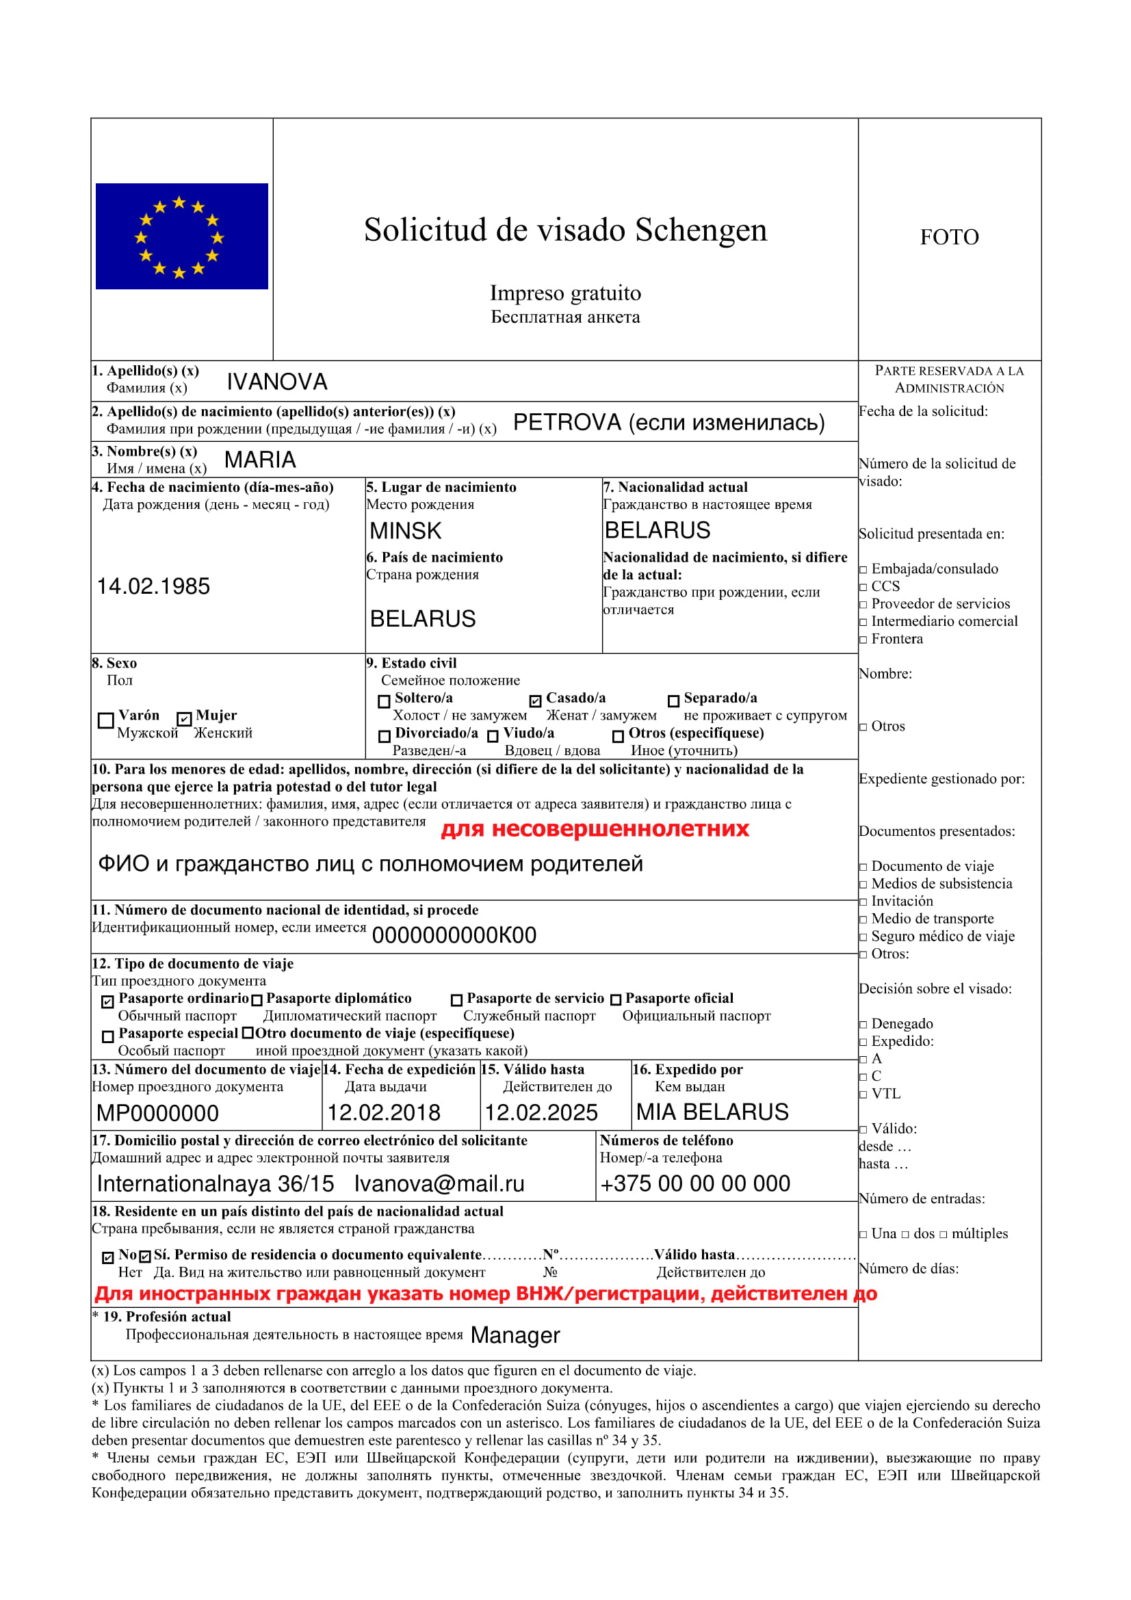 Шенгенская виза: оформление, типы виз, как продлить, сроки действия